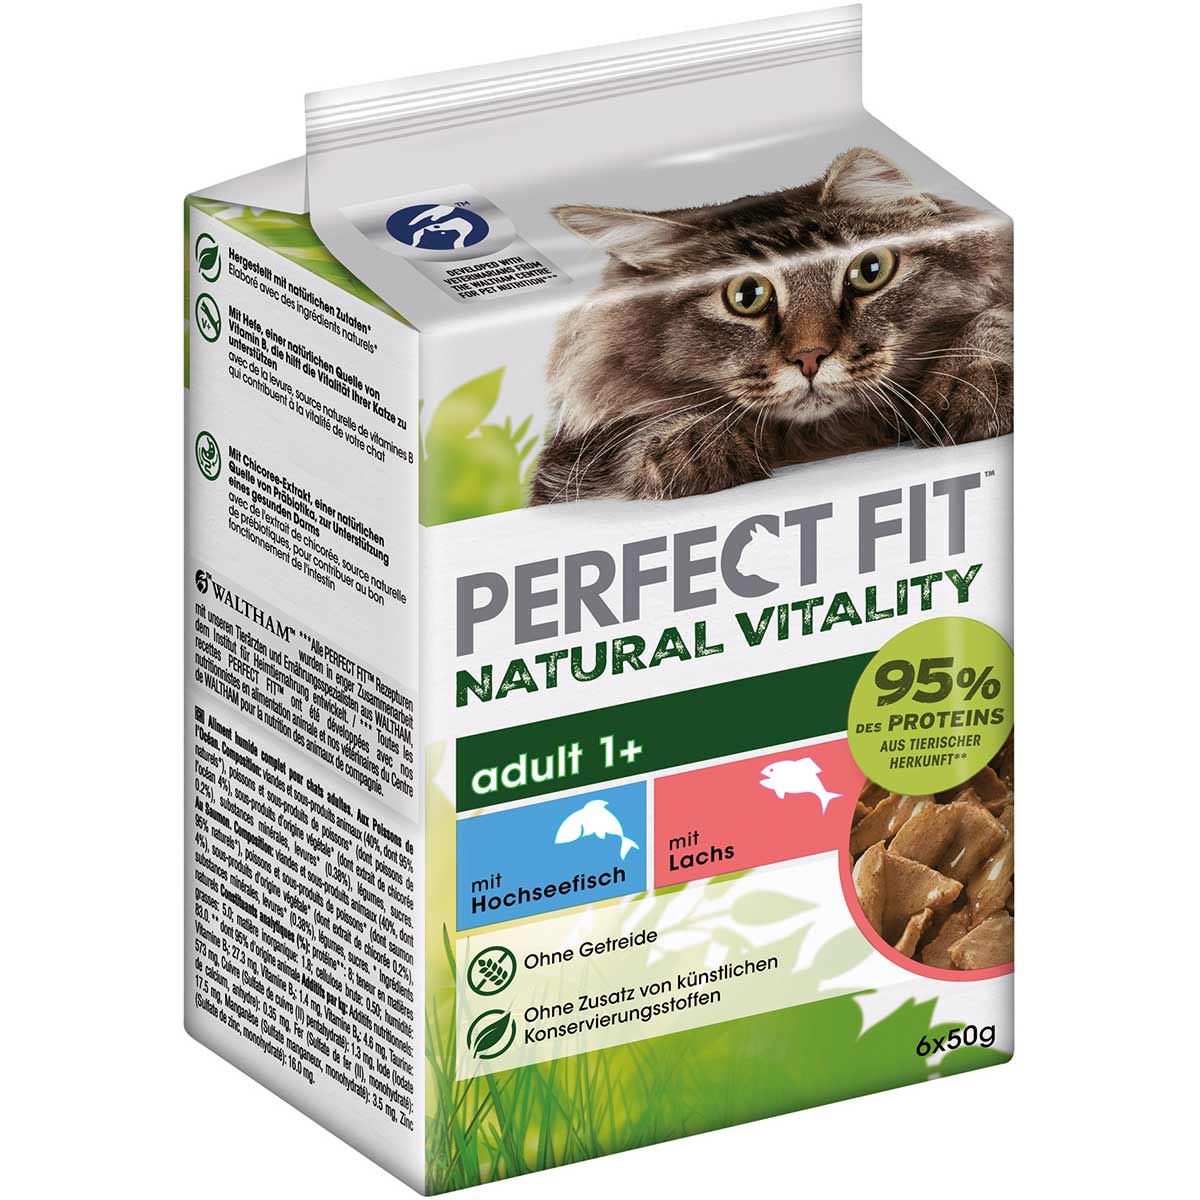 PERFECT FIT Katze Natural Vitality Adult 1+ mit Hochseefisch und Lachs 36x50g